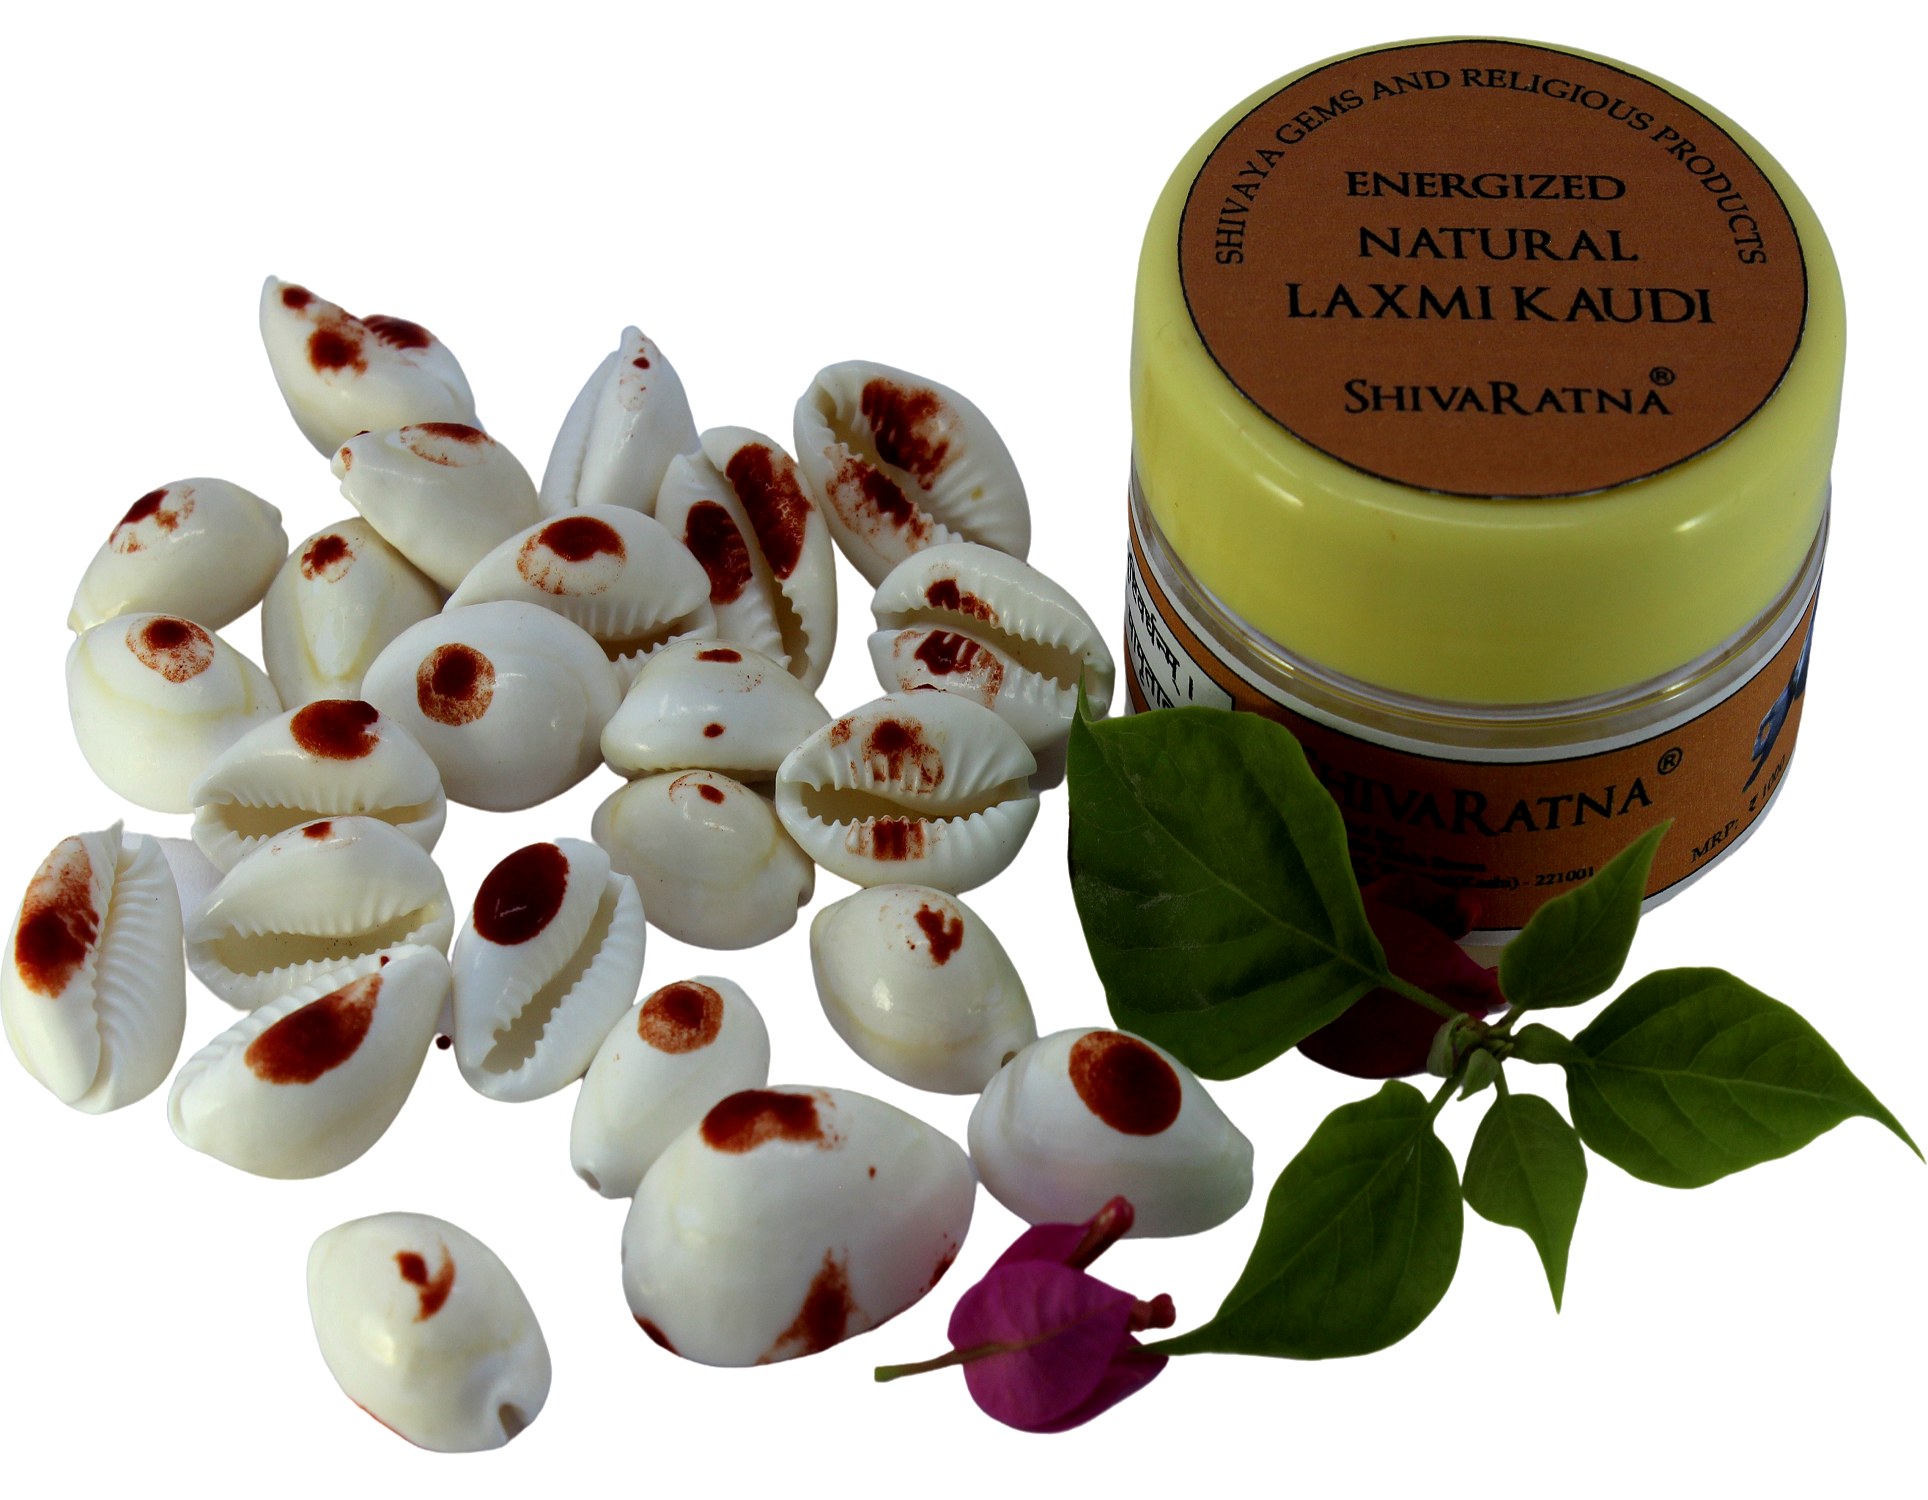 ShivaRatna Energized Natural Laxmi Kaudi - 21 Pieces (for Wealth Attraction) - ShivaRatna